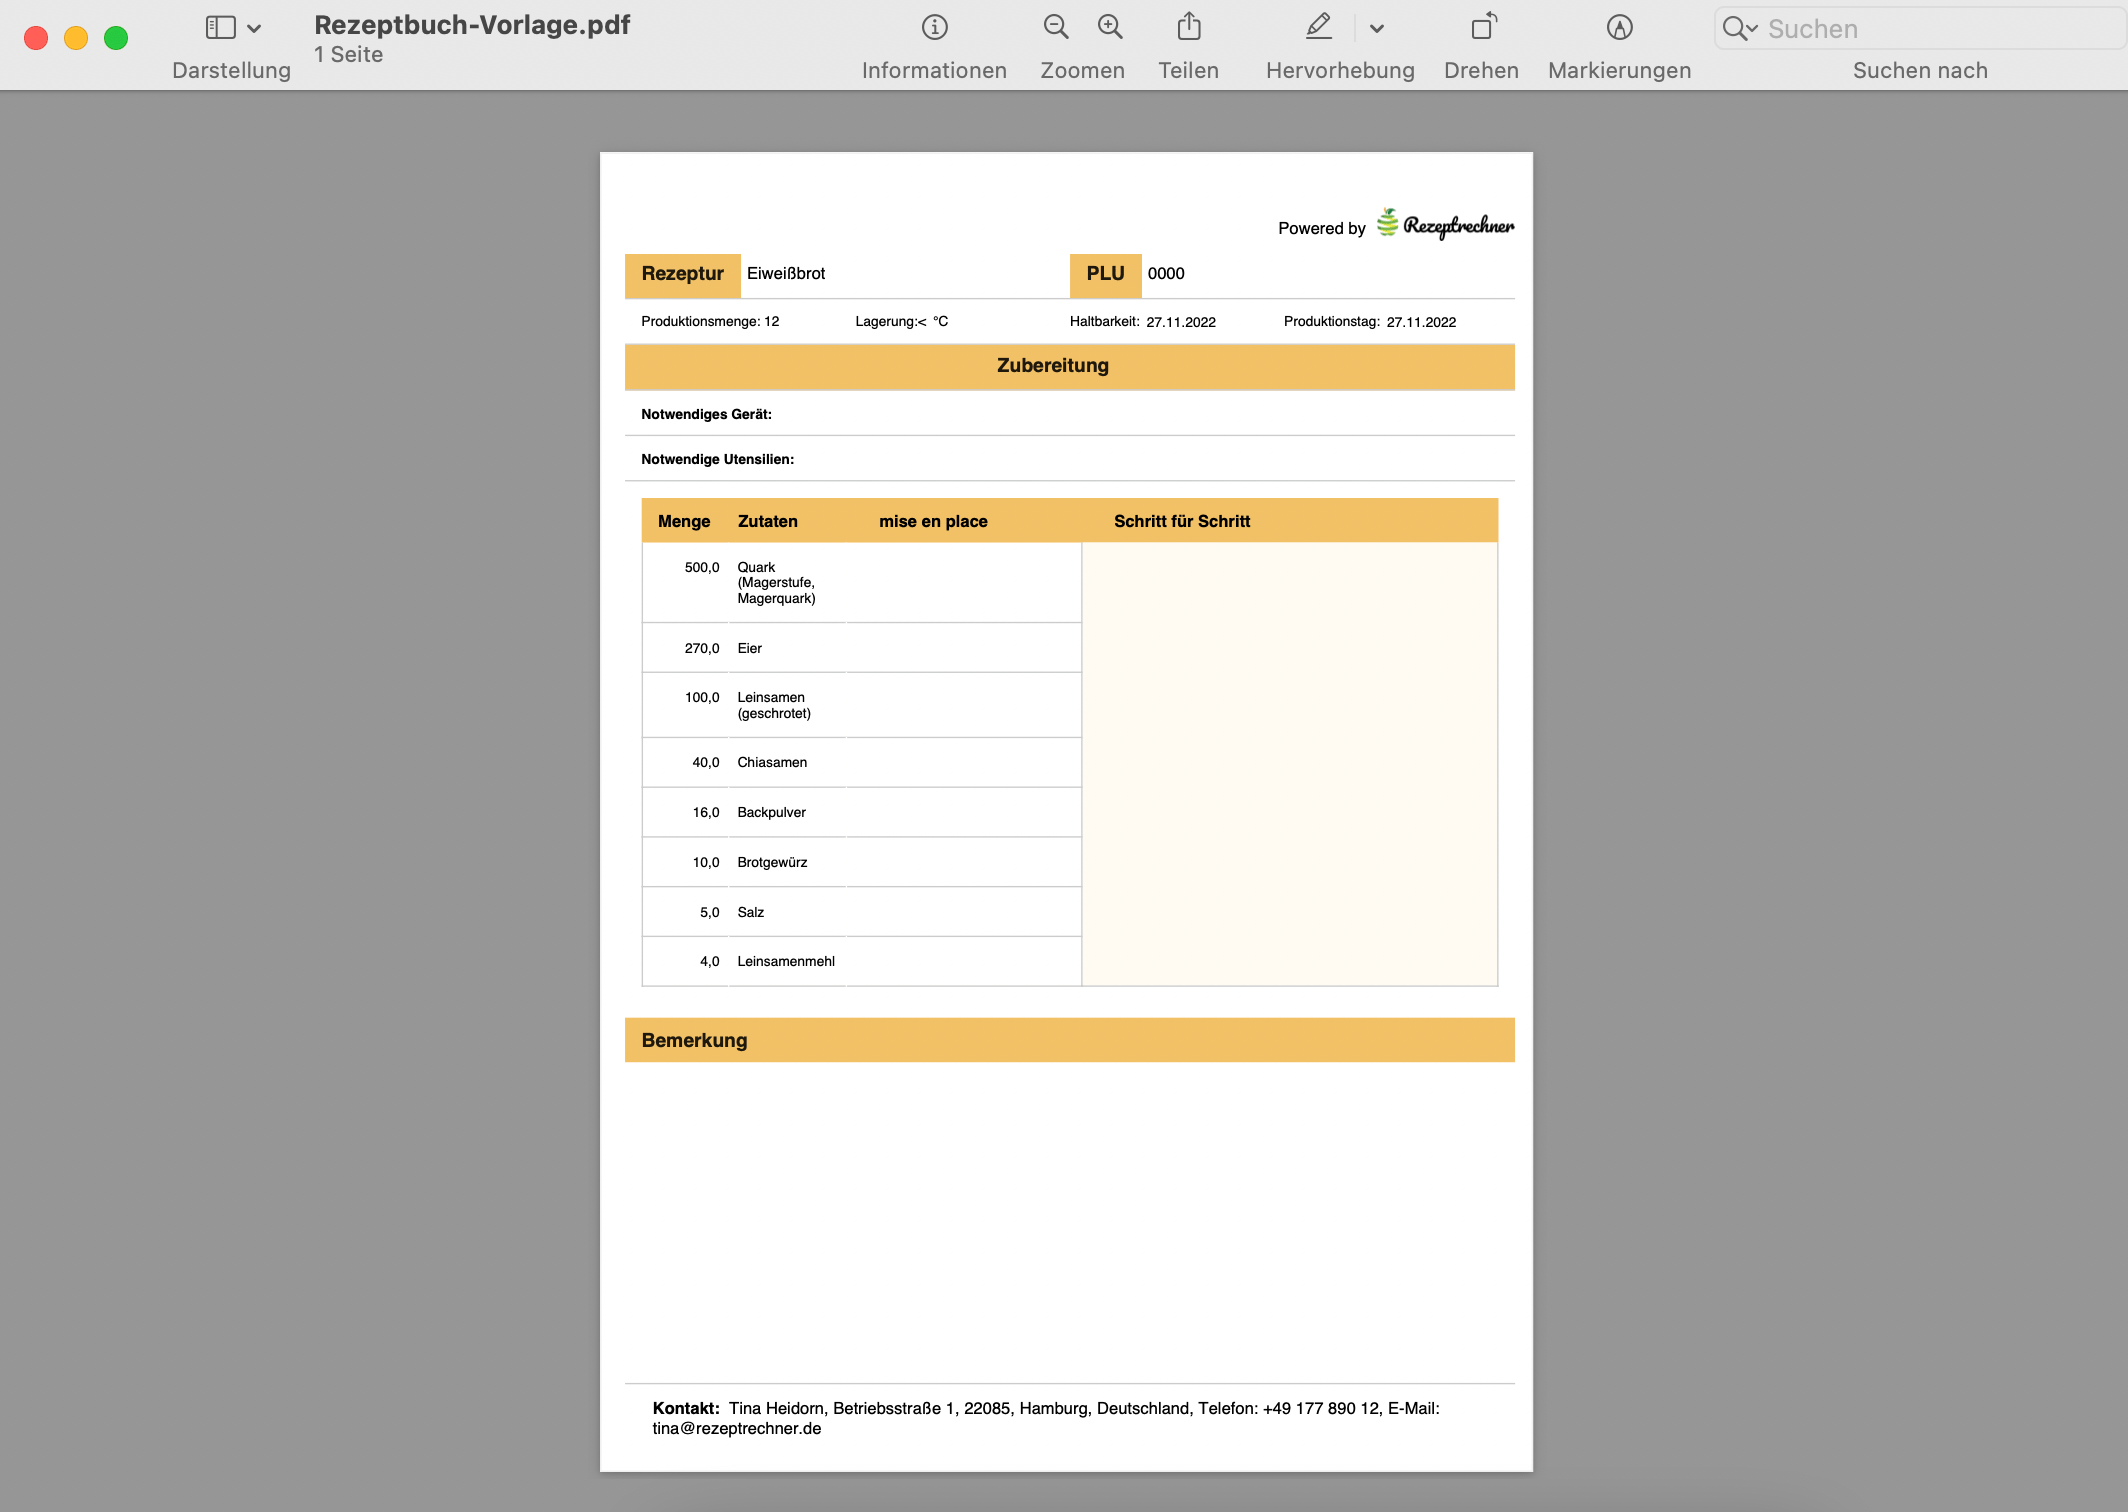 Rezeptbuch Vorlage zum ausdrucken als PDF